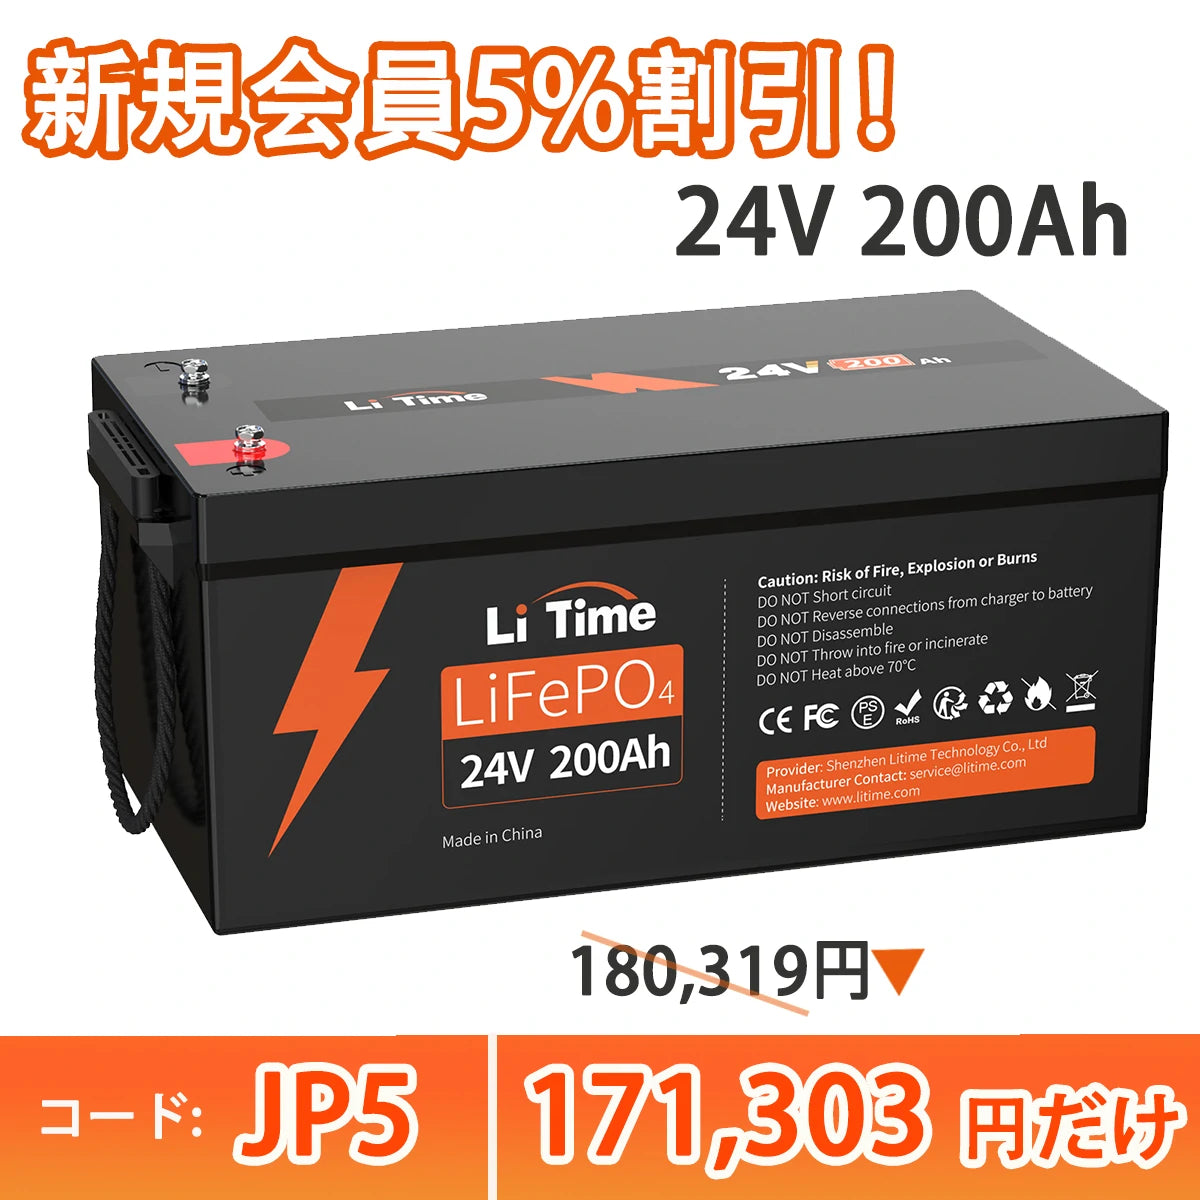 LiTime 24V200Ah リン酸鉄リチウムイオンバッテリー 5120Wh LiFePO4 バッテリー https://jp.litime.com/products/24v200ah